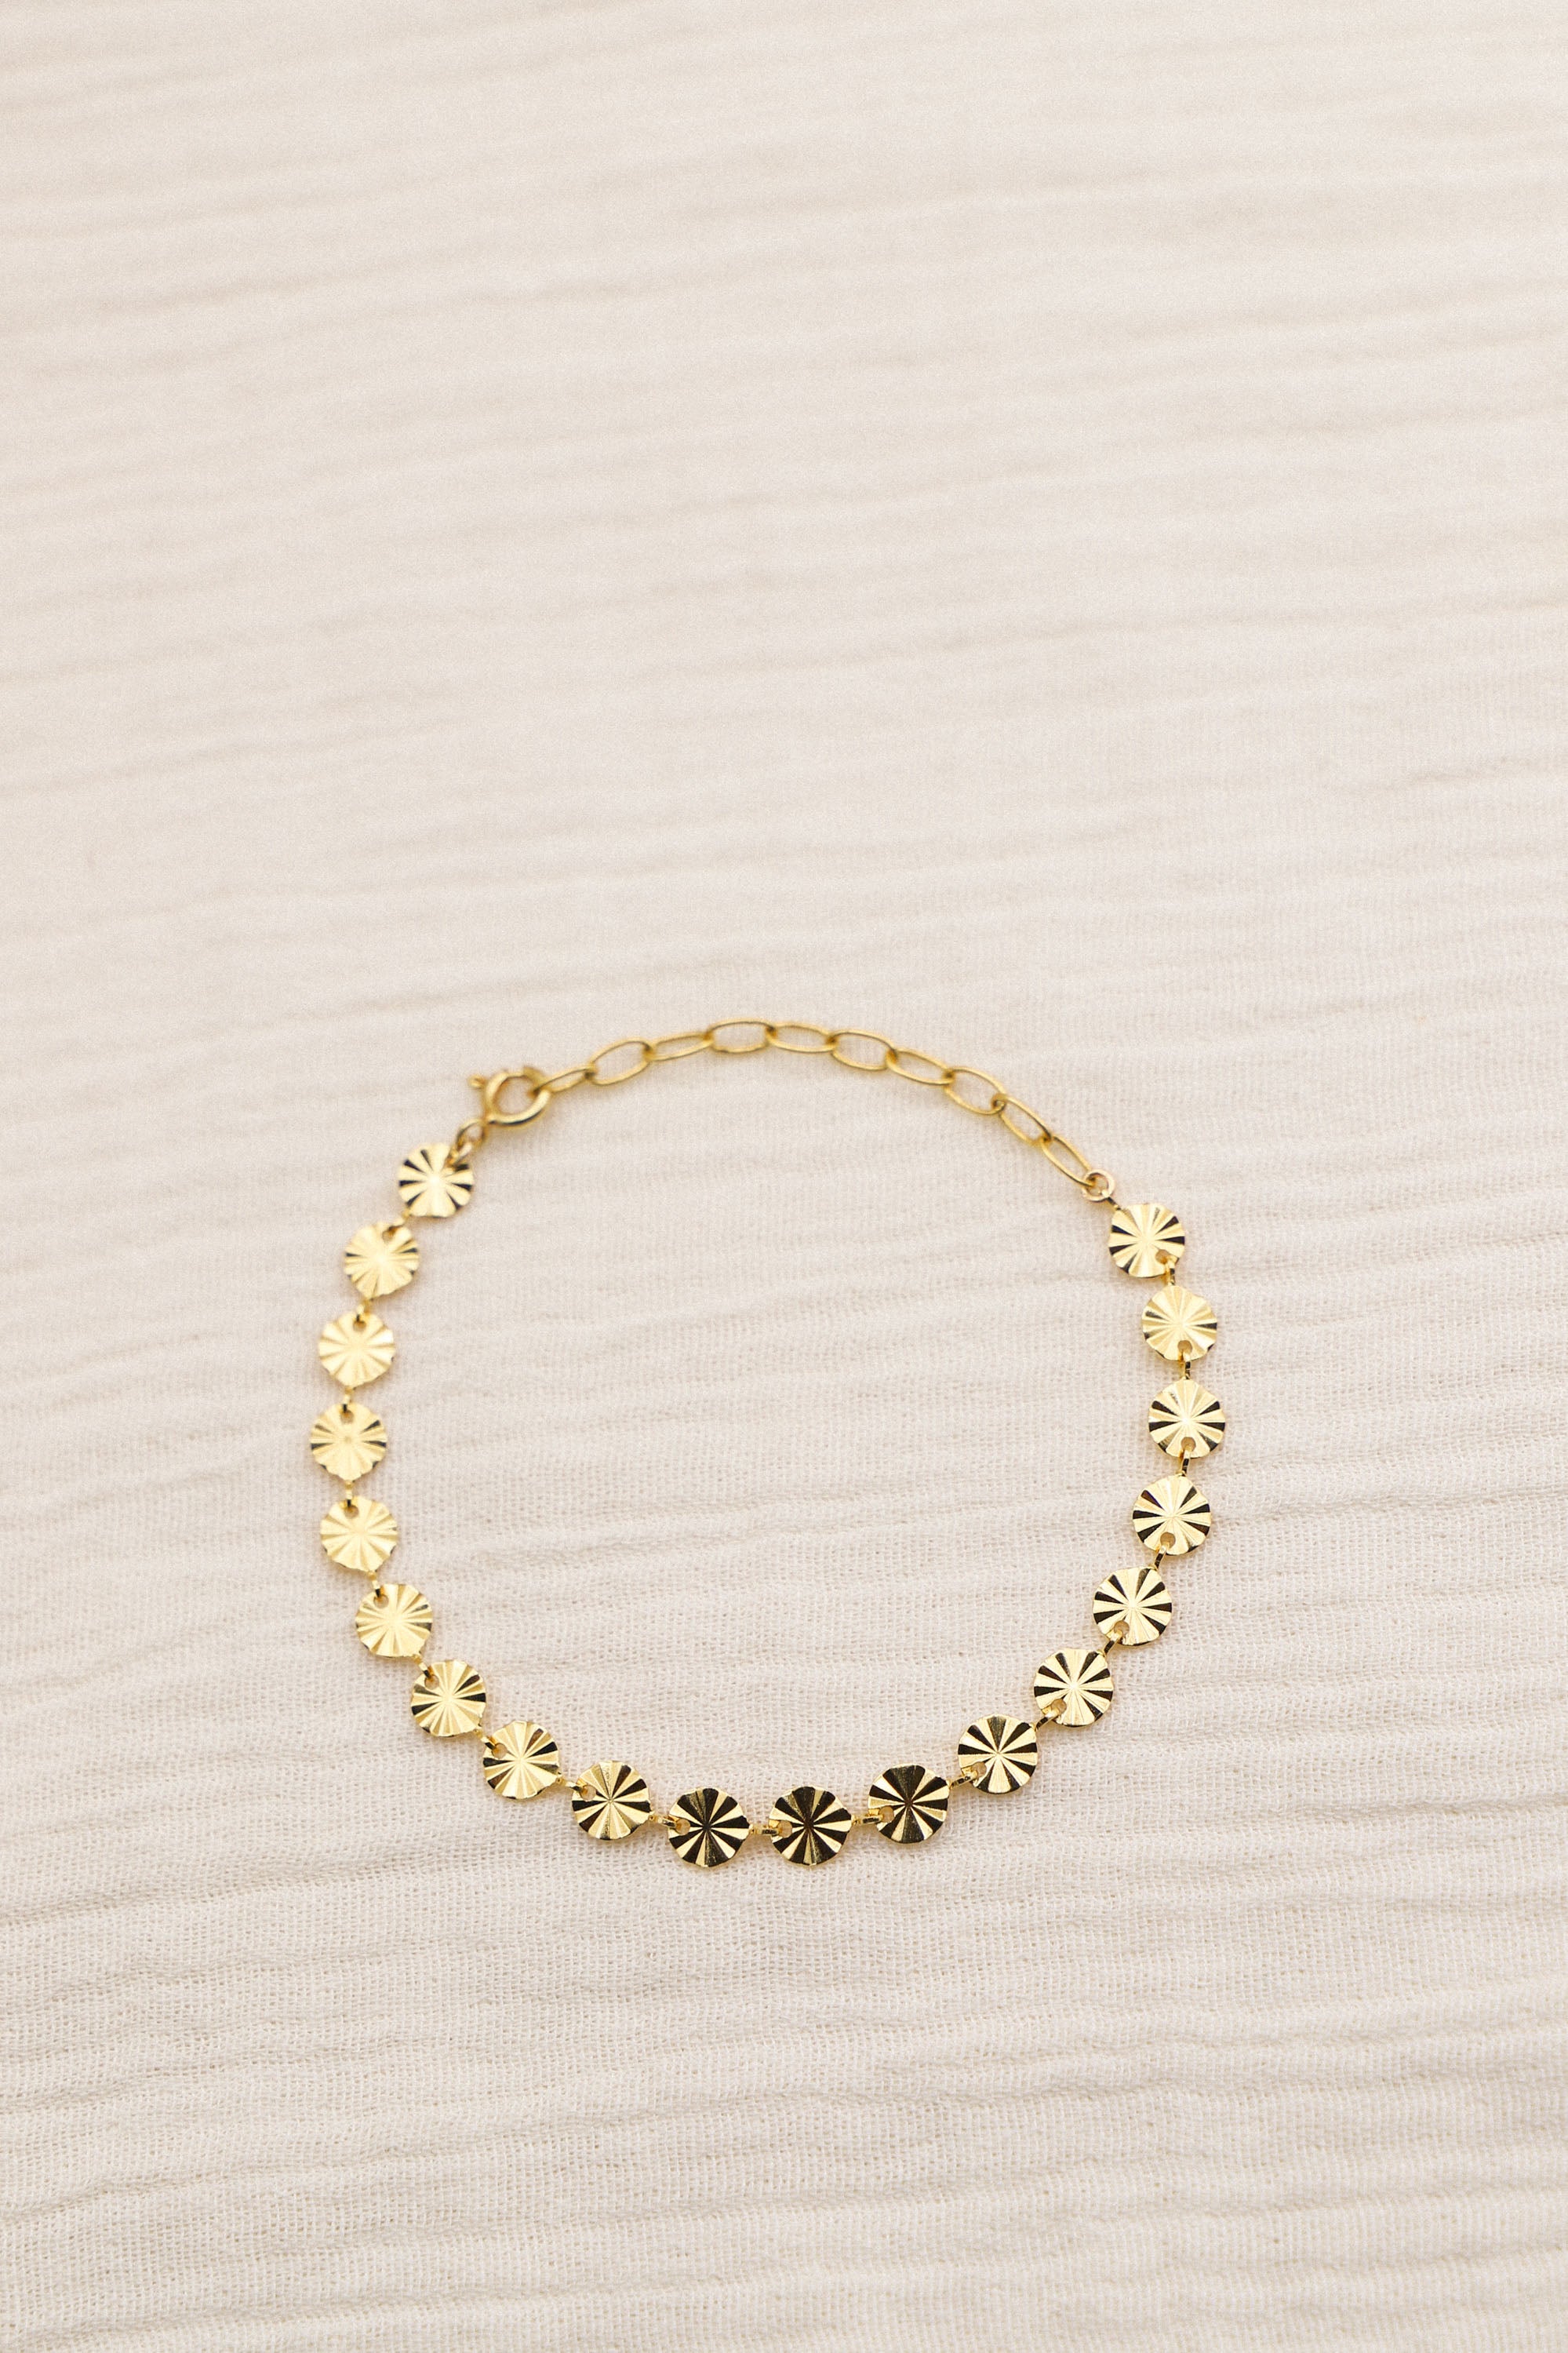 Bracelet Livia composé de mailles rondes et striées. Le tout, plaqué or 24 carats.